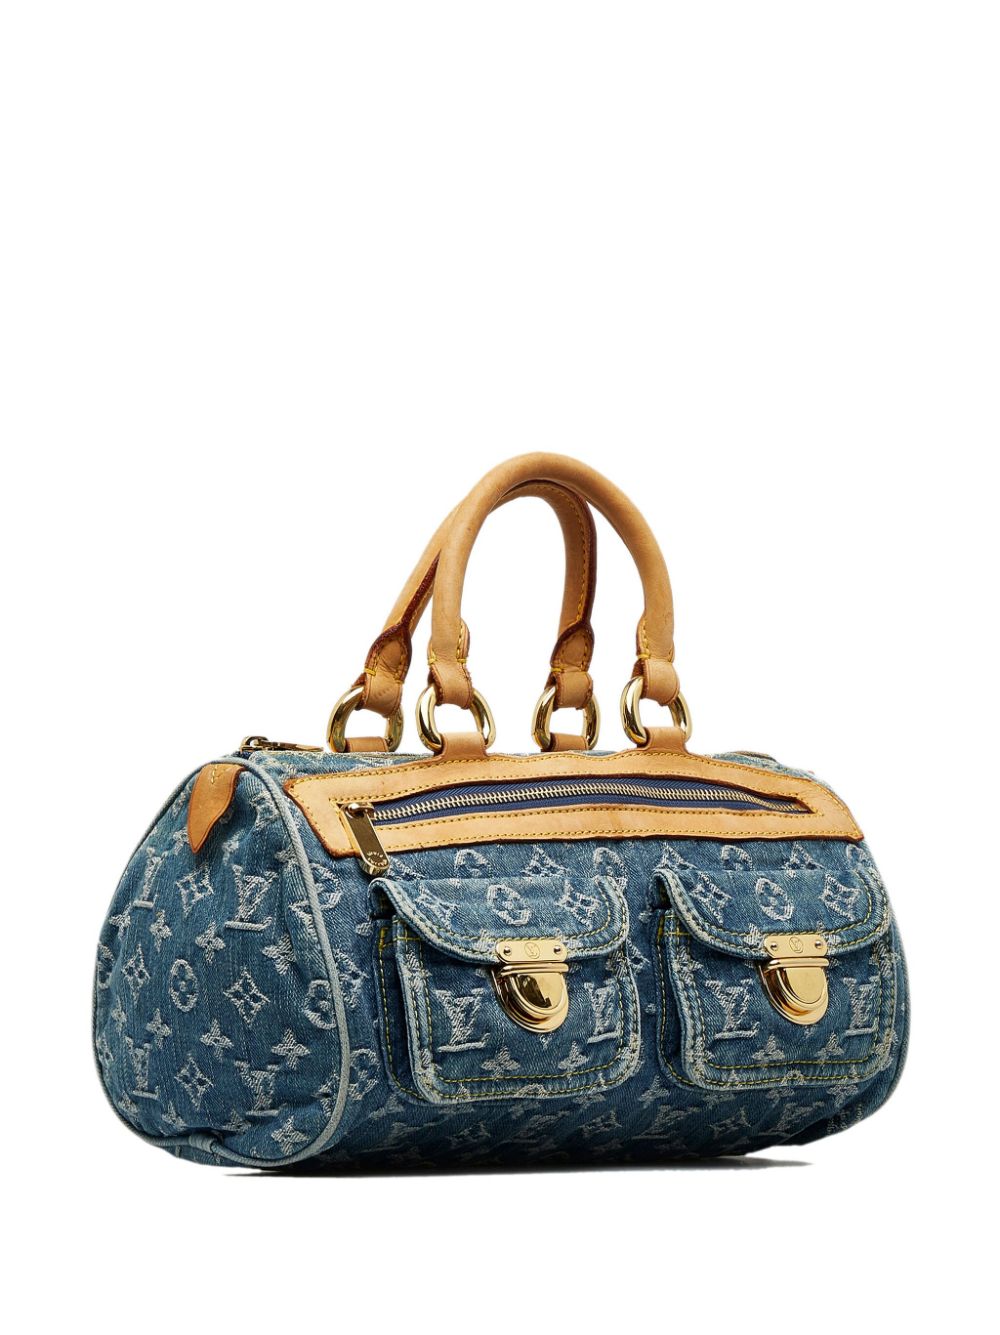 Louis Vuitton 2005 pre-owned Woven Sac Handbag - Farfetch